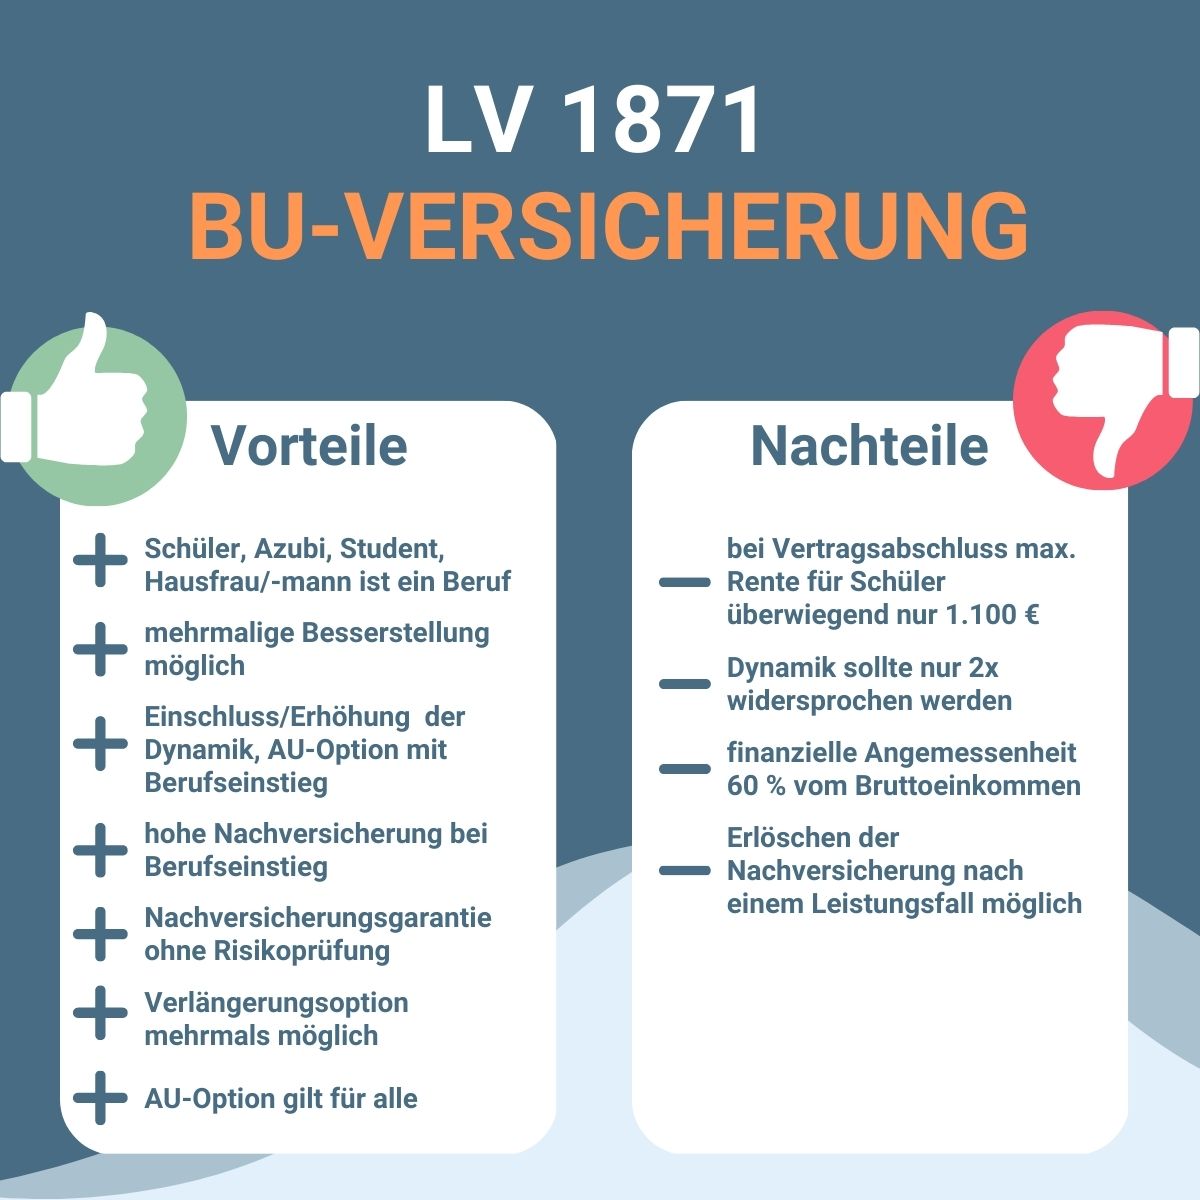 Infografik zu Vorteilen und Nachteilen einer Berufsunfähigkeitsversicherung bei der LV 1871.